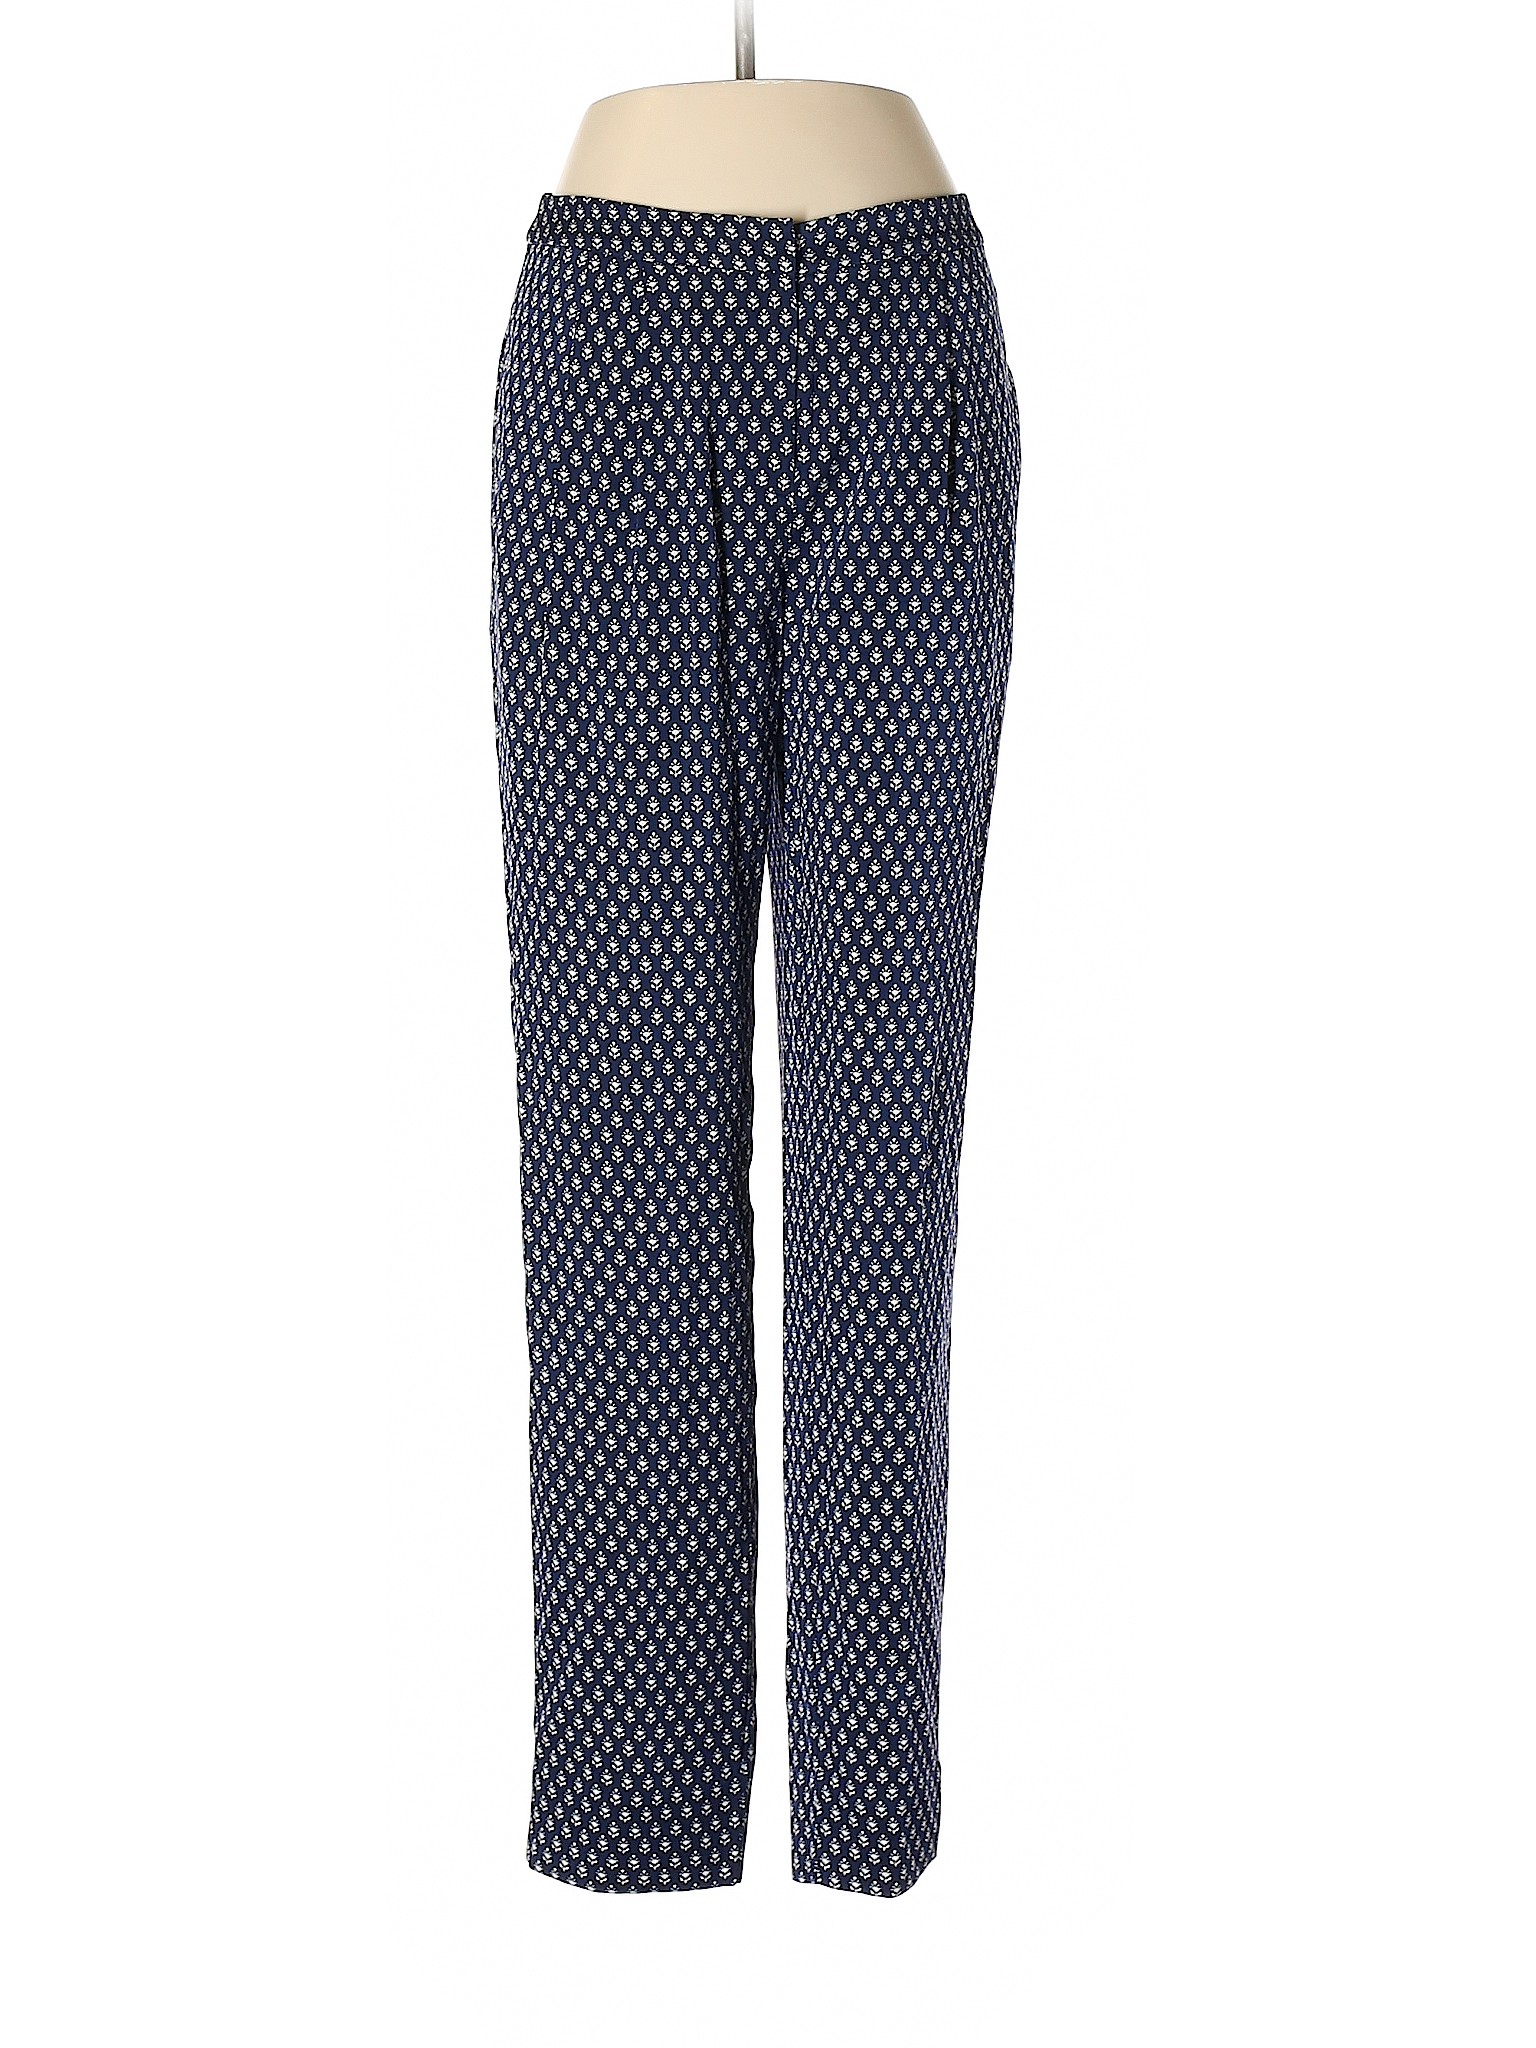 Diane von Furstenberg Women Blue Silk Pants 2 | eBay